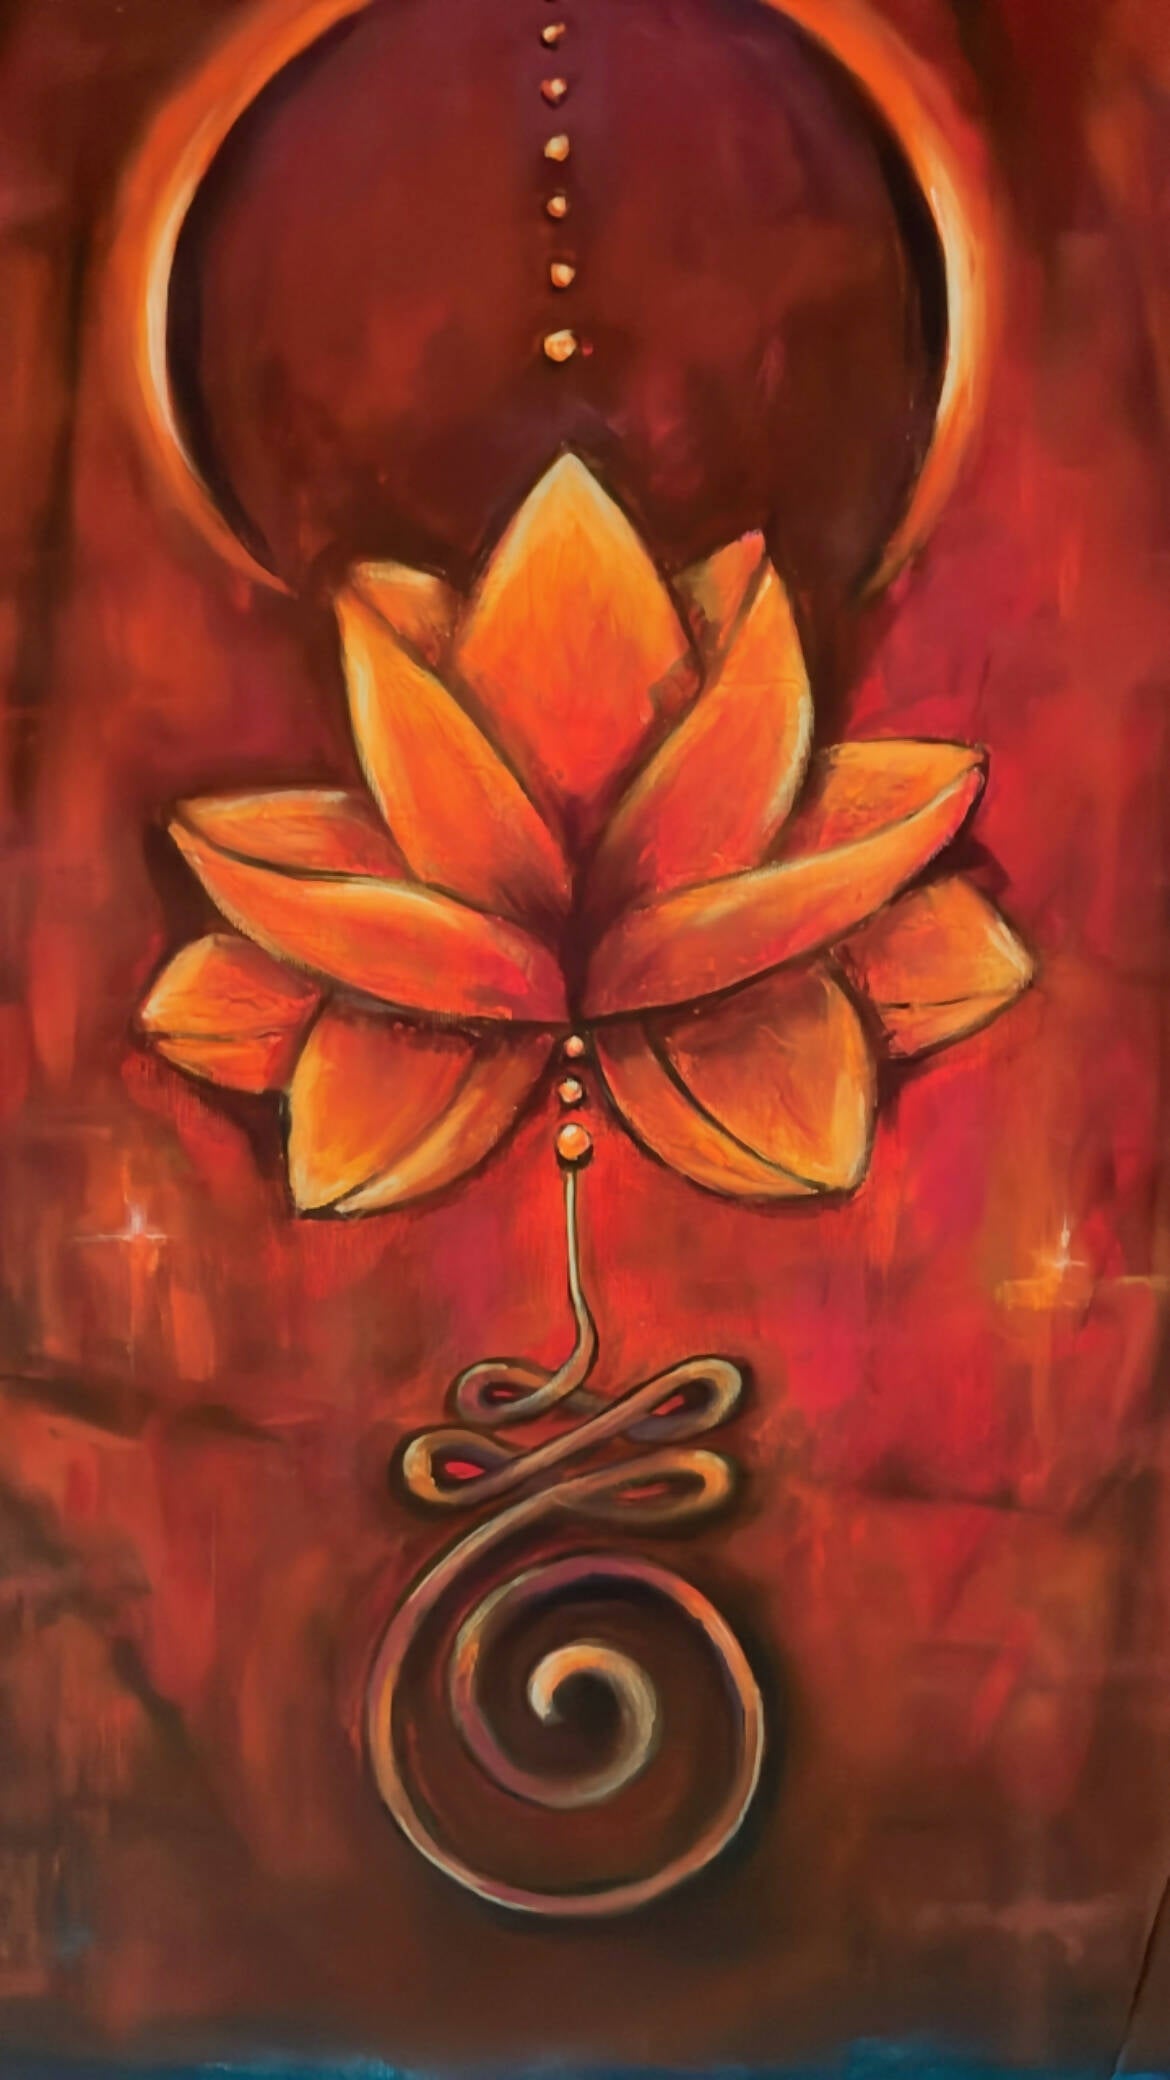 The unalome lotus